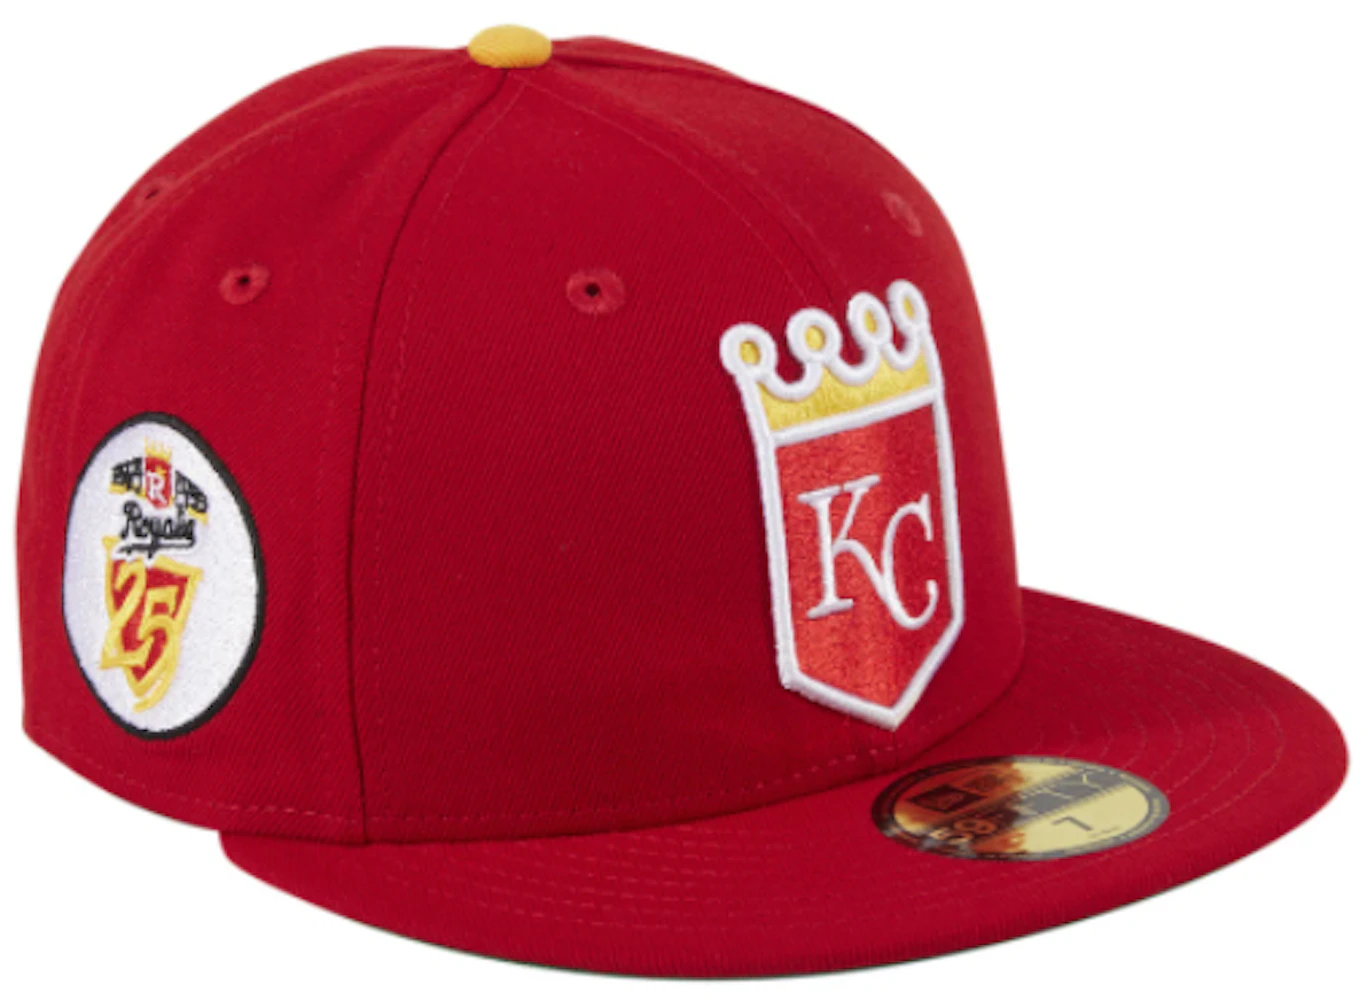 royals baseball hats